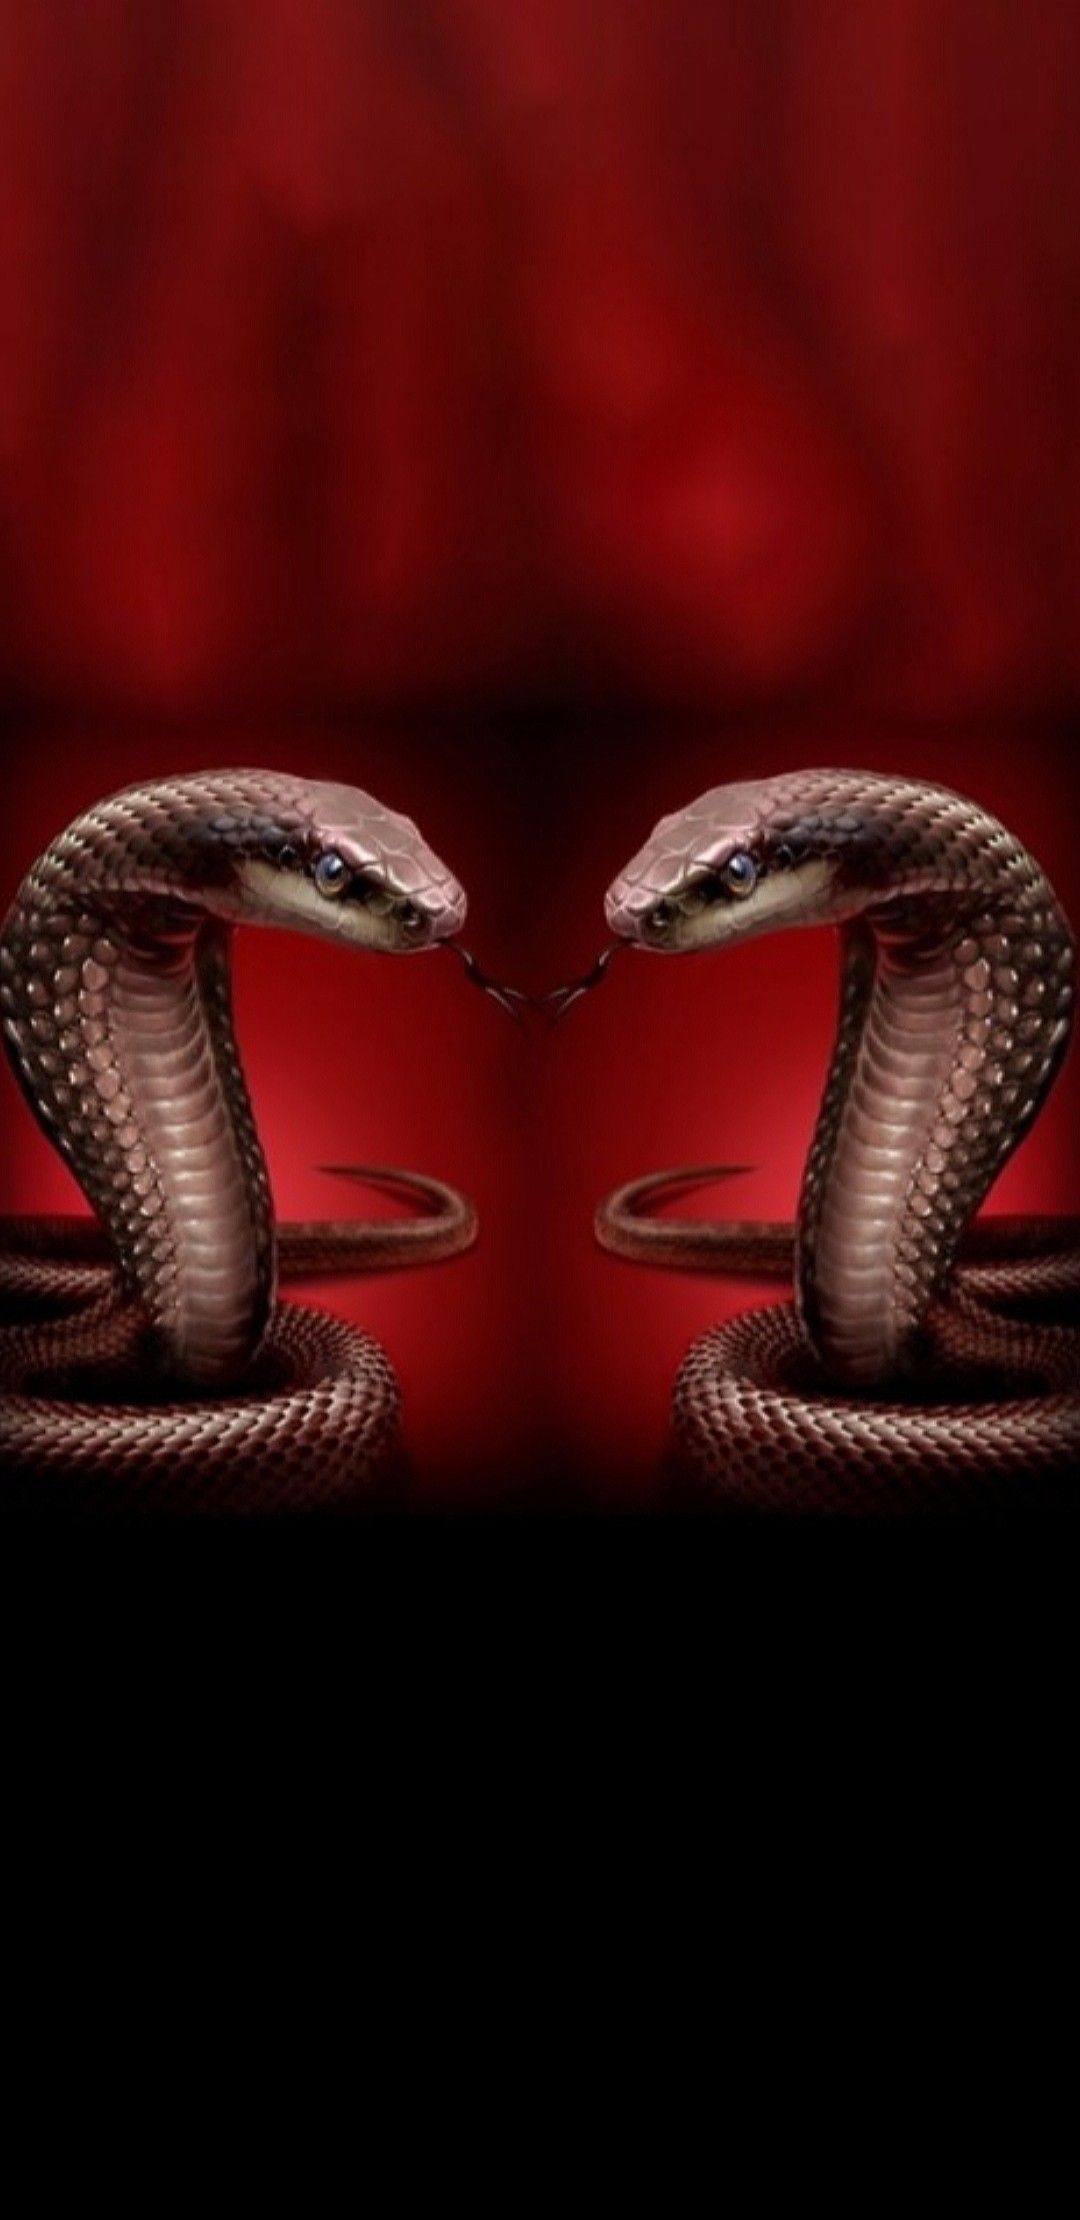 Snake Wallpaper ideas. snake, snake wallpaper, beautiful snakes